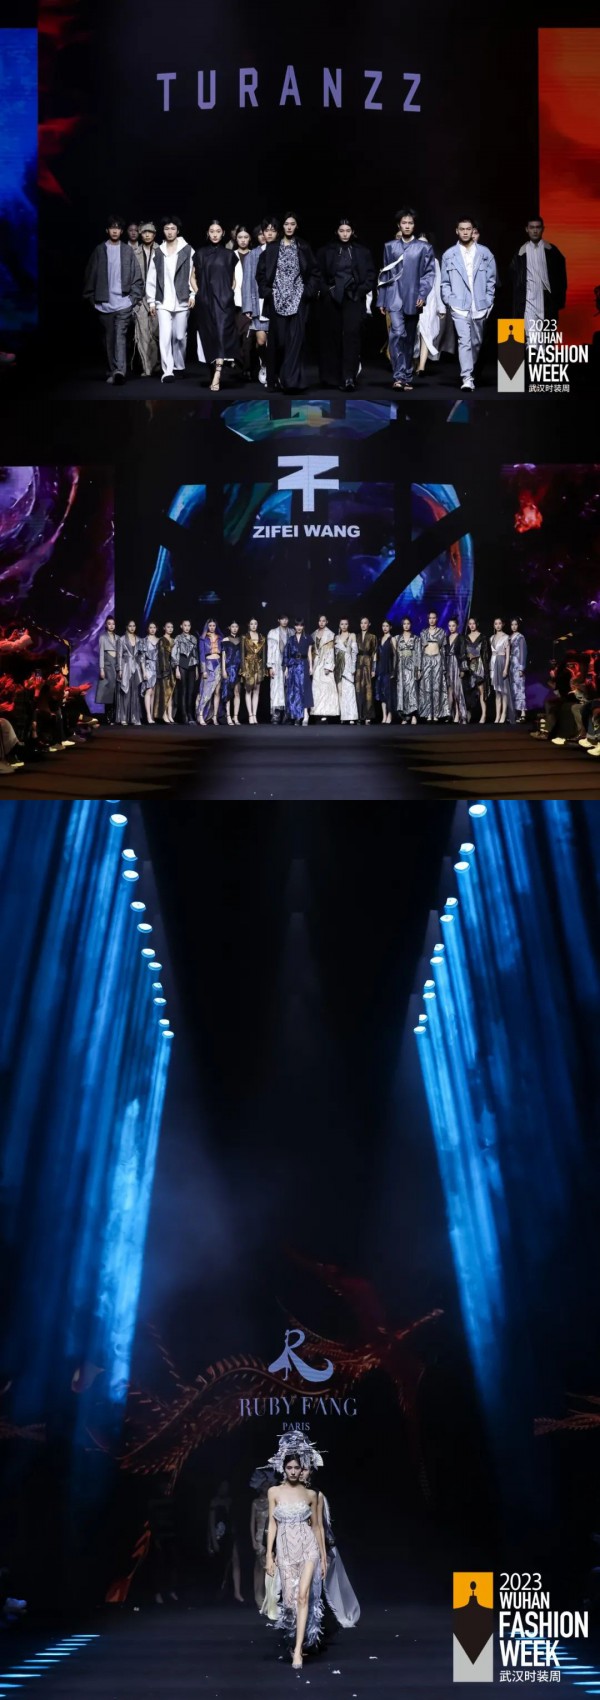 多元時尚盛宴 無界英雄之城,2023武漢時裝周品牌發布秀圓滿閉幕